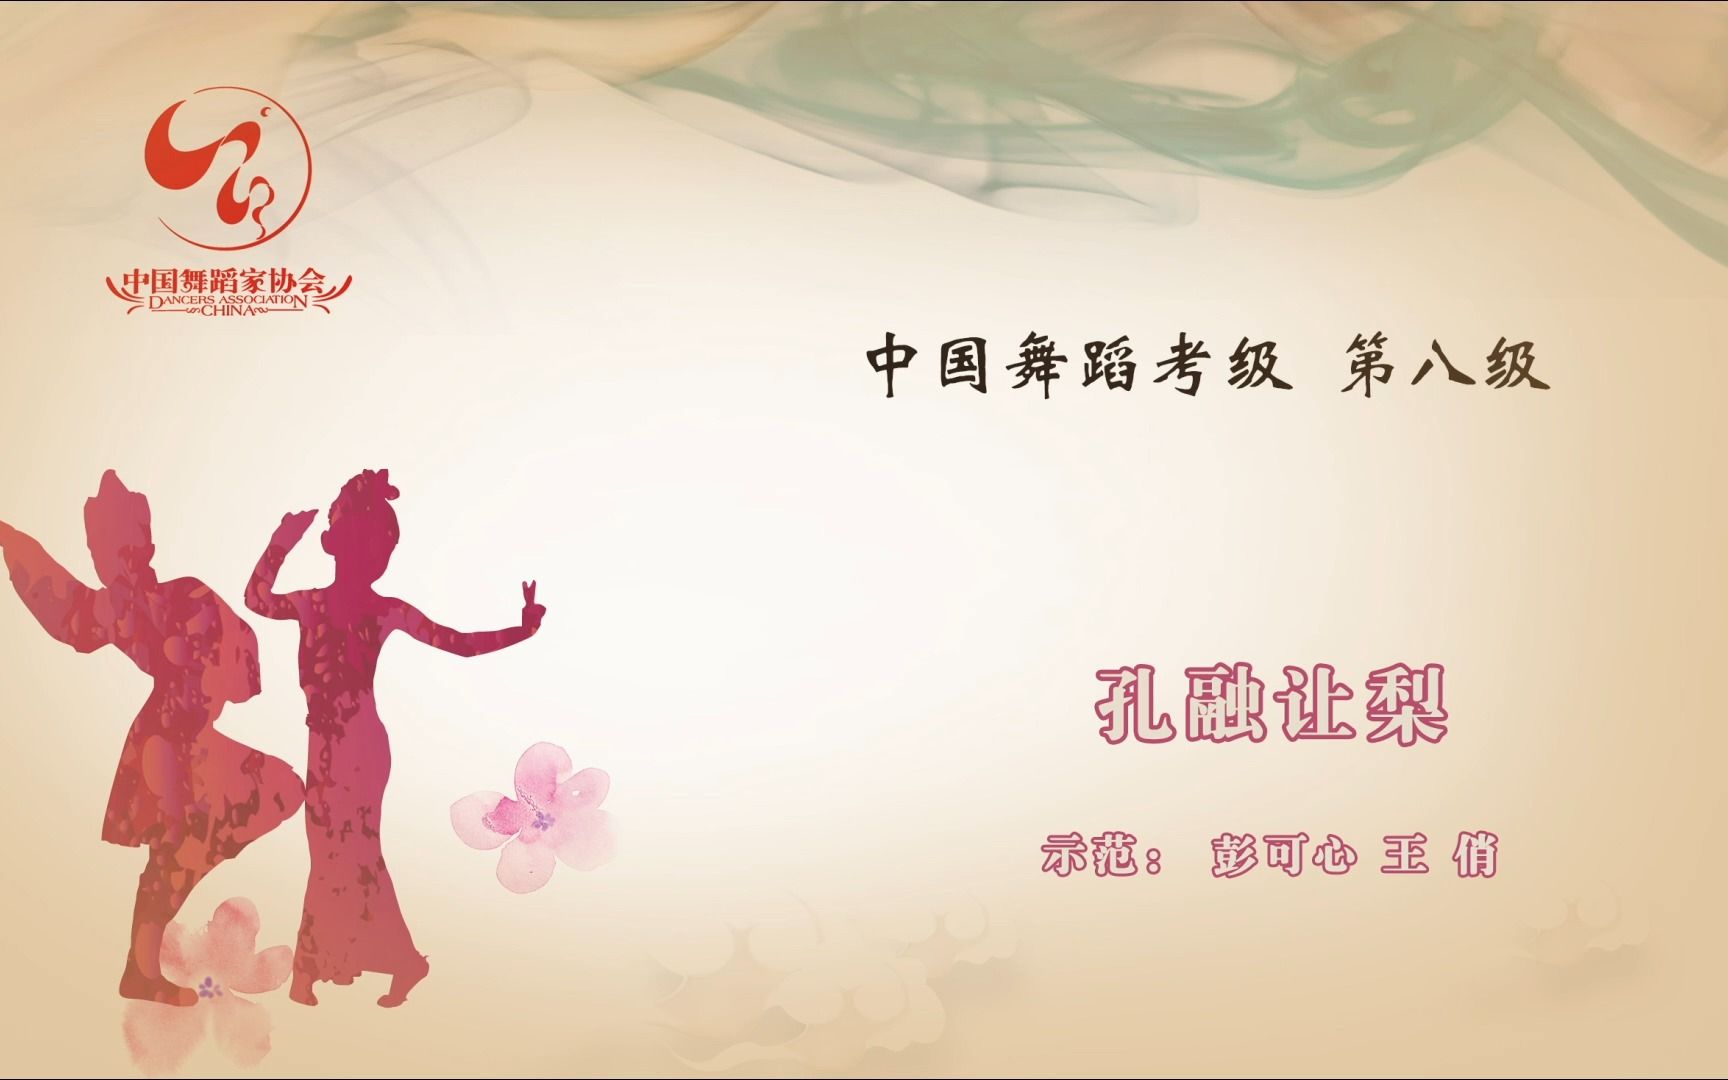 中国舞蹈家协会《中国舞考级》第八级《孔融让梨》